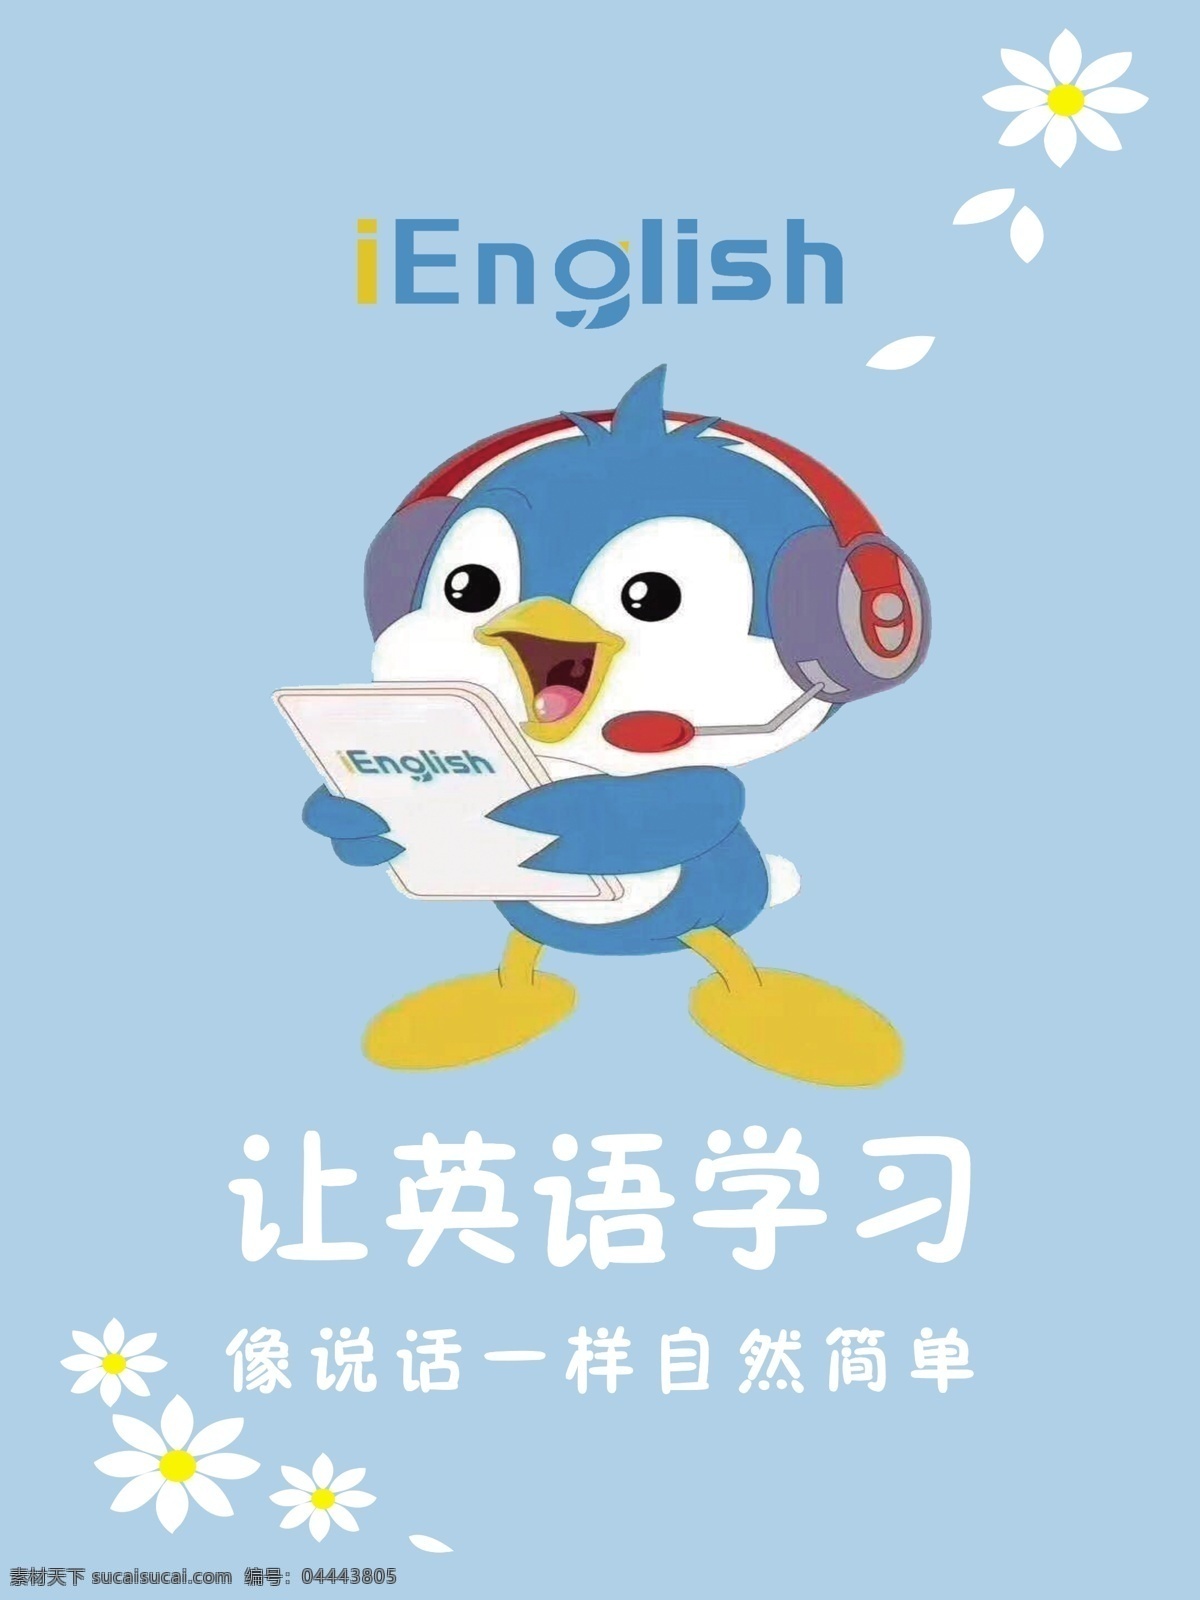 英语学习 小企鹅 蓝色英语背景 英语卡通背景 小学英语 简单背景